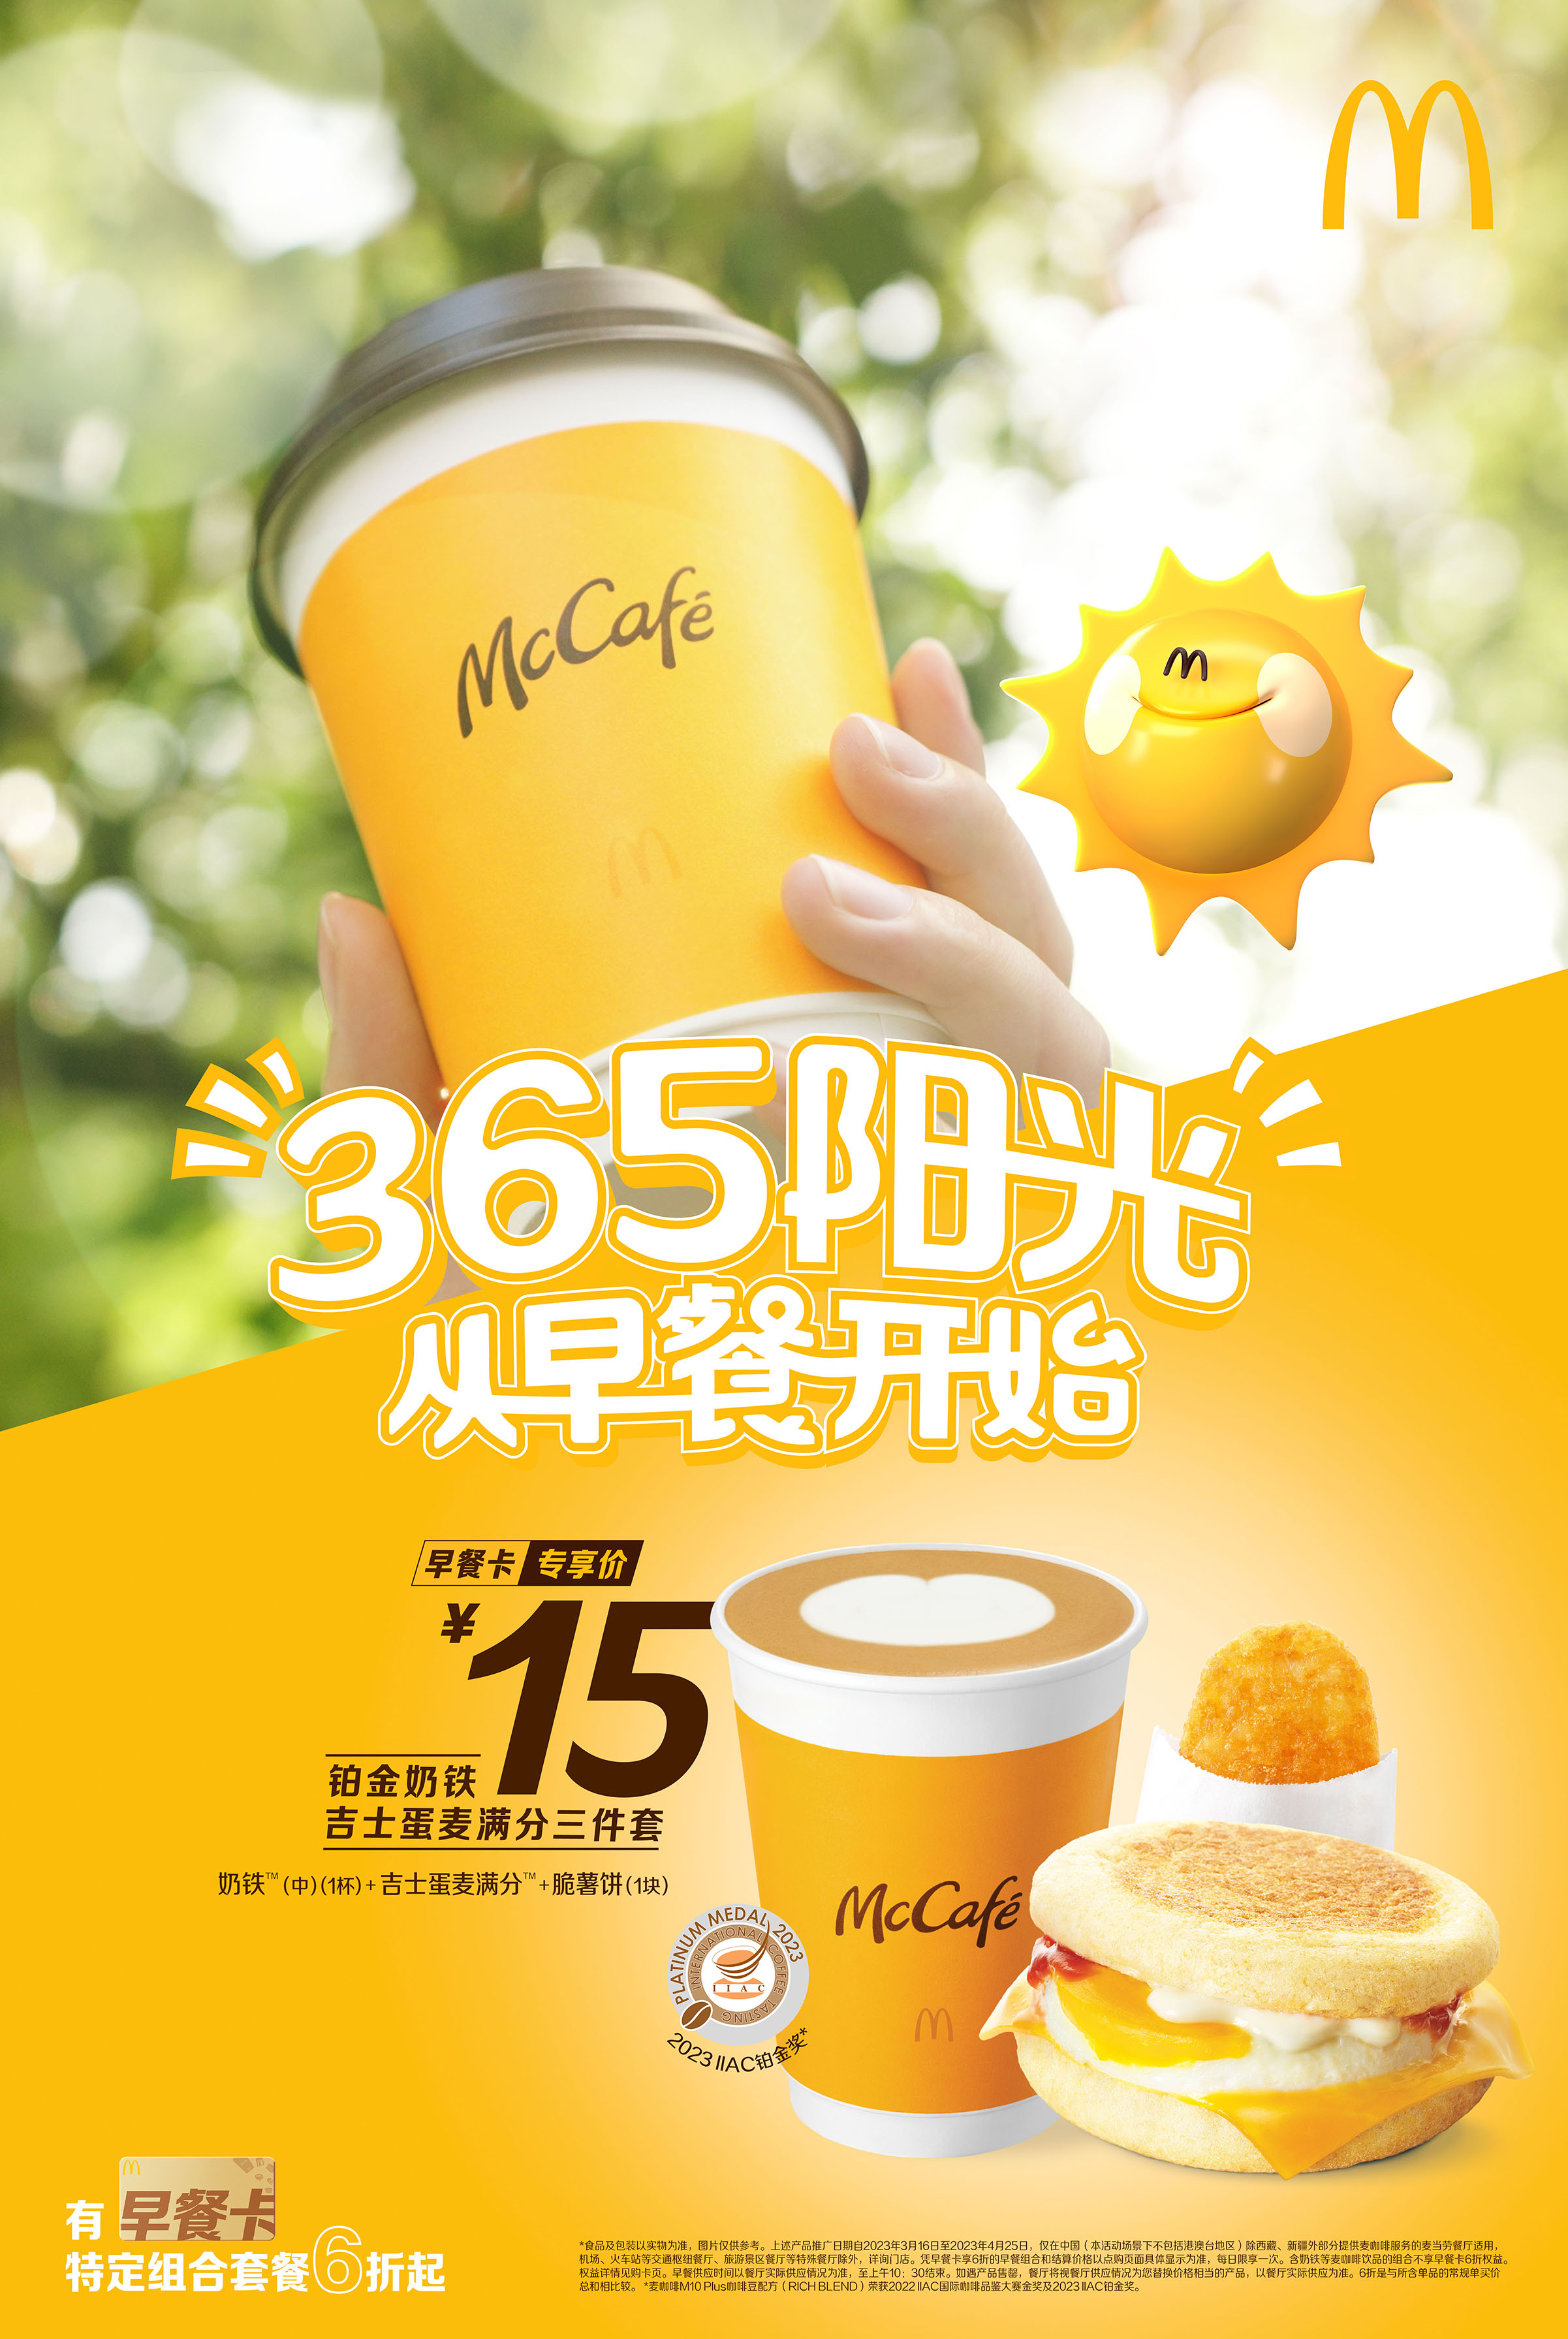 @徐州吃货 早起的动力来自麦当劳365天阳光早餐(图1)